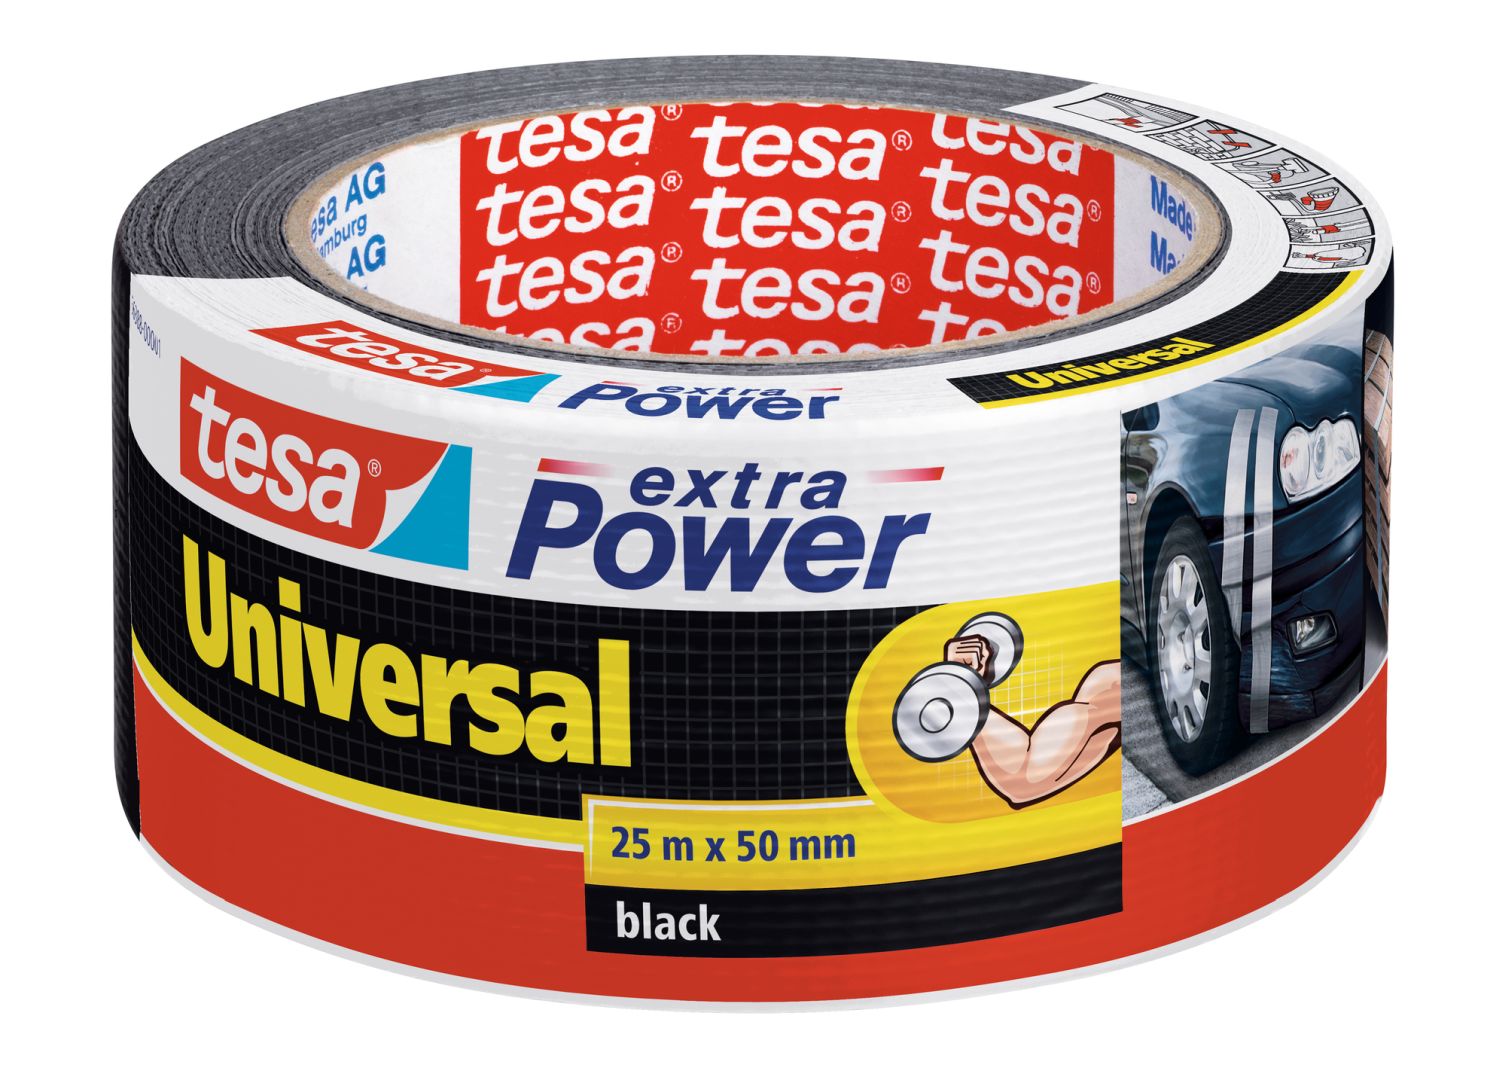 tesa extra Power universal, von Hand einreißbar, hohe Wetterfestigkeit, schwarz, 25 m x 50 mm 